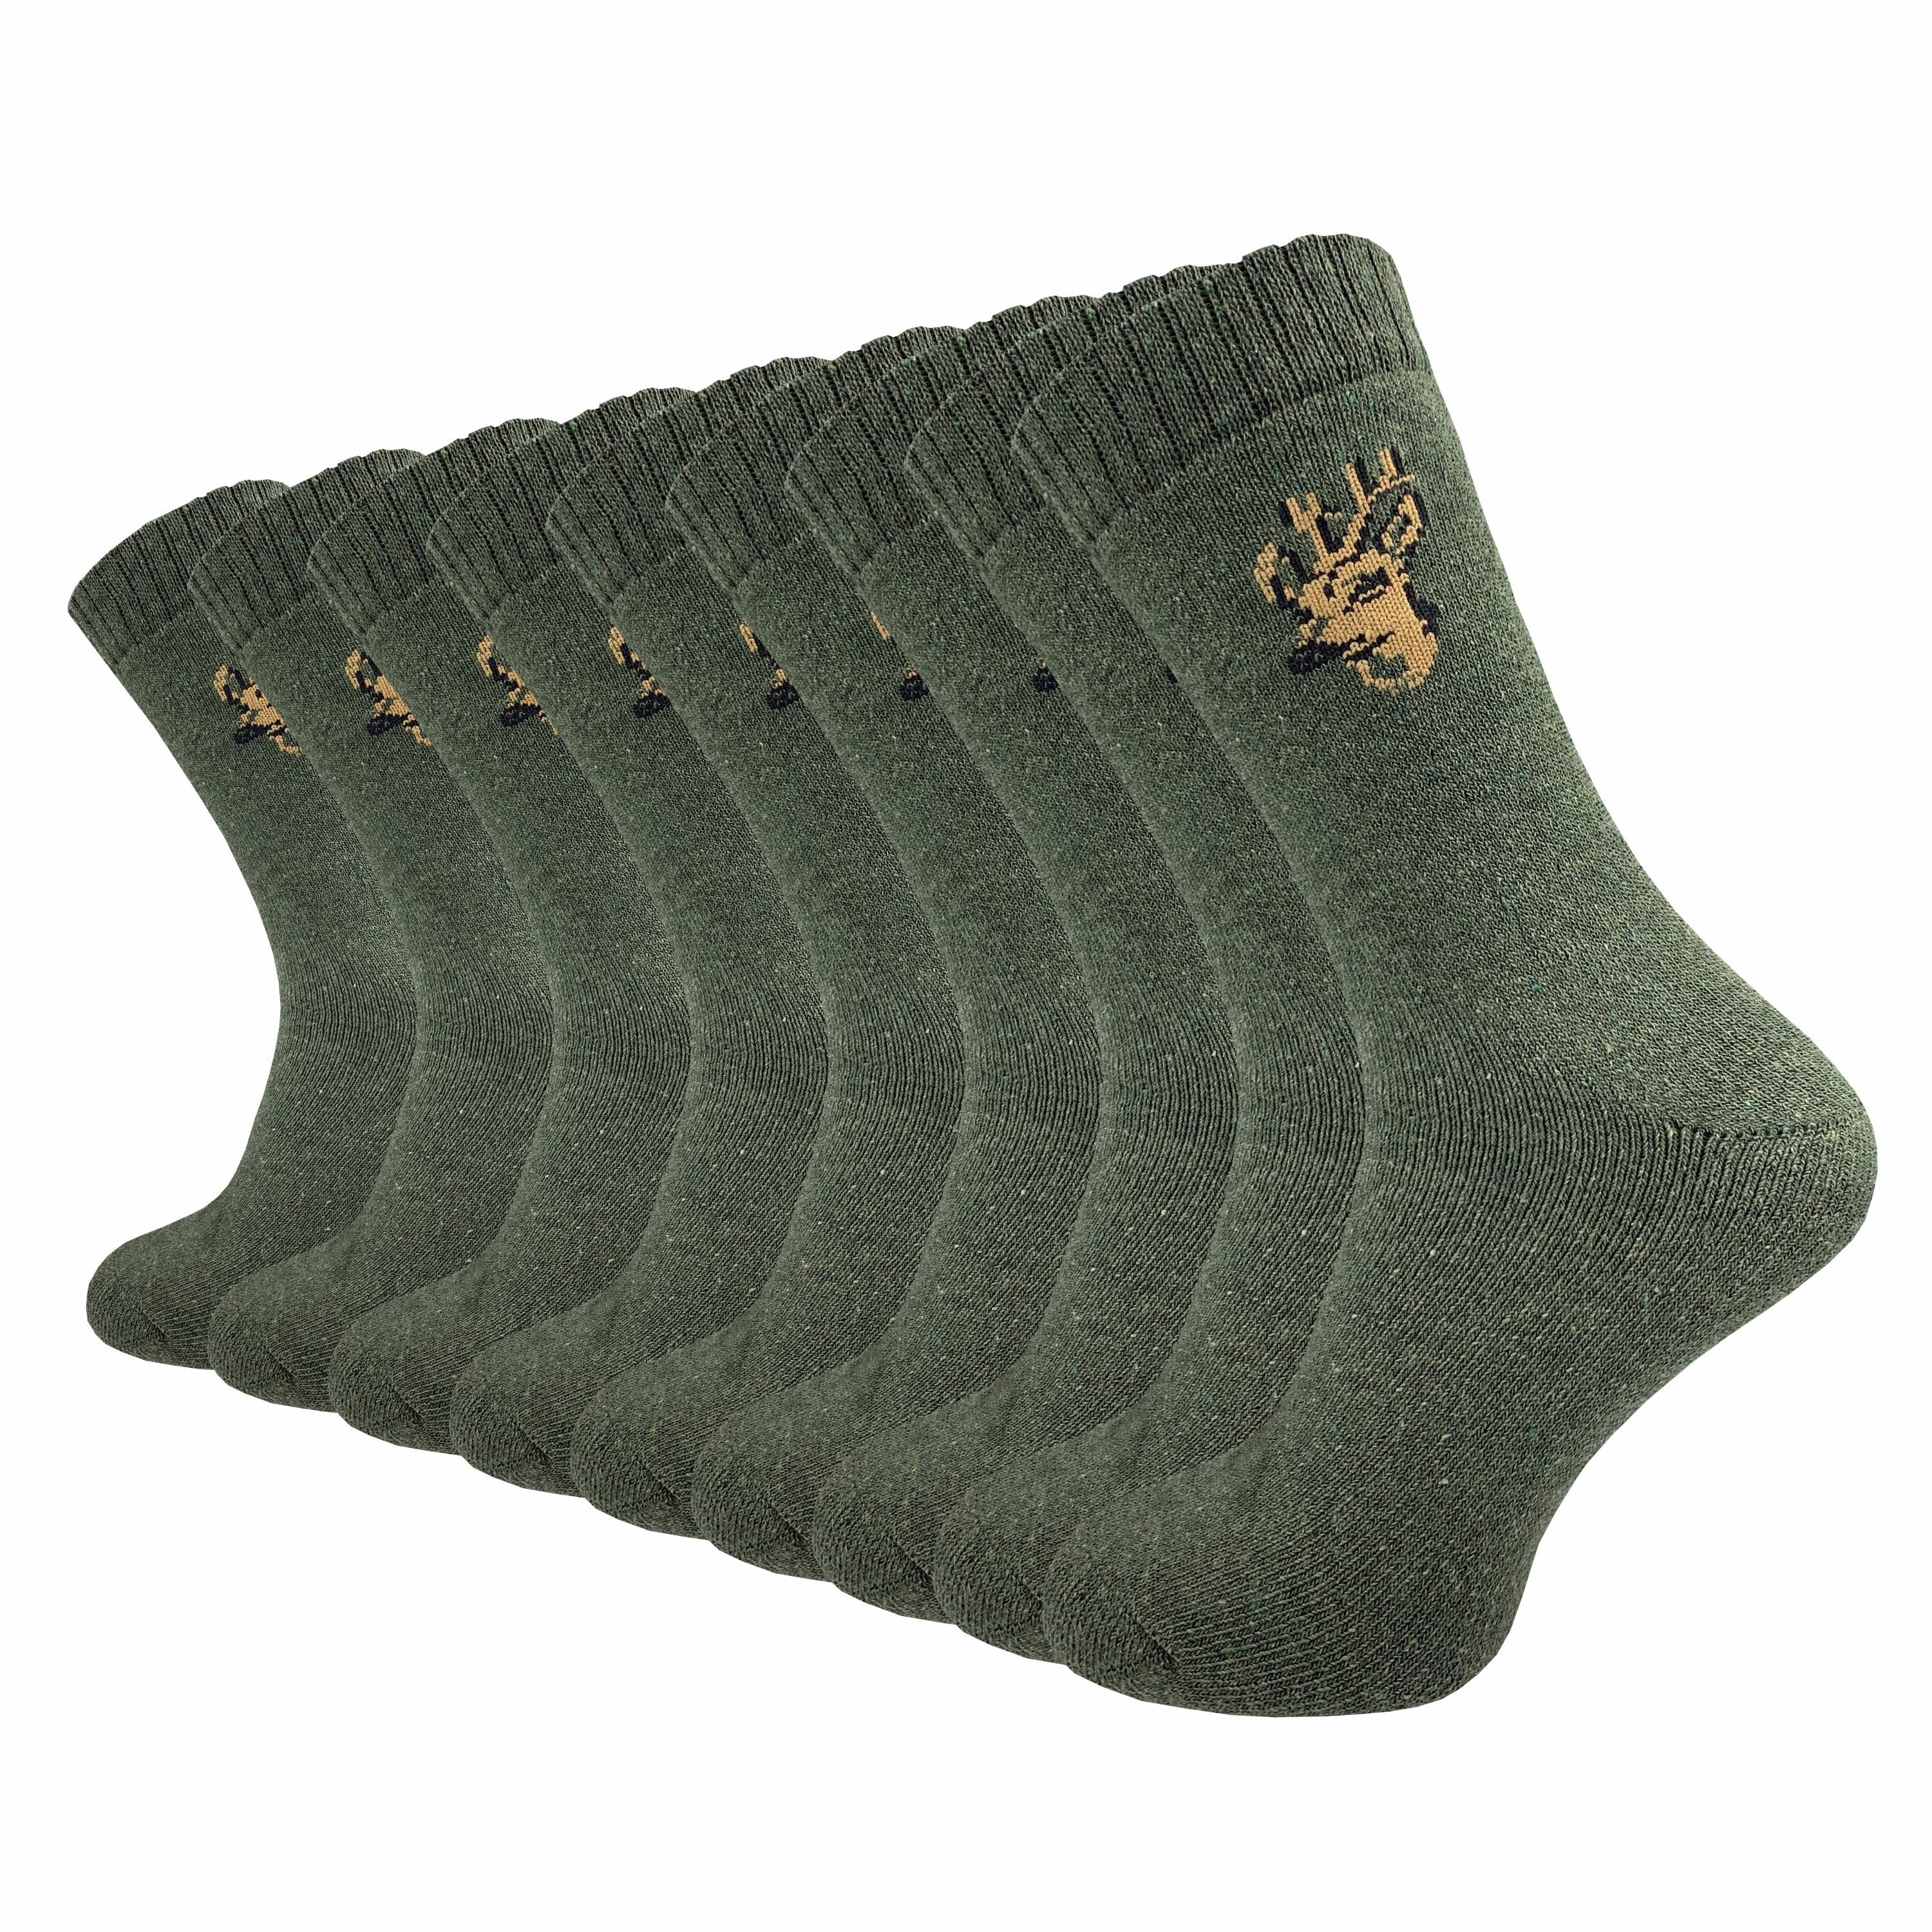 GAWILO Freizeitsocken für Herren - warme Socken für Jäger - Armysocken uni & mit Jagdmotiv (9 Paar) mit gepolsterter Frotteesohle, verfügbar in grün, grau & schwarz grün mit Hirsch